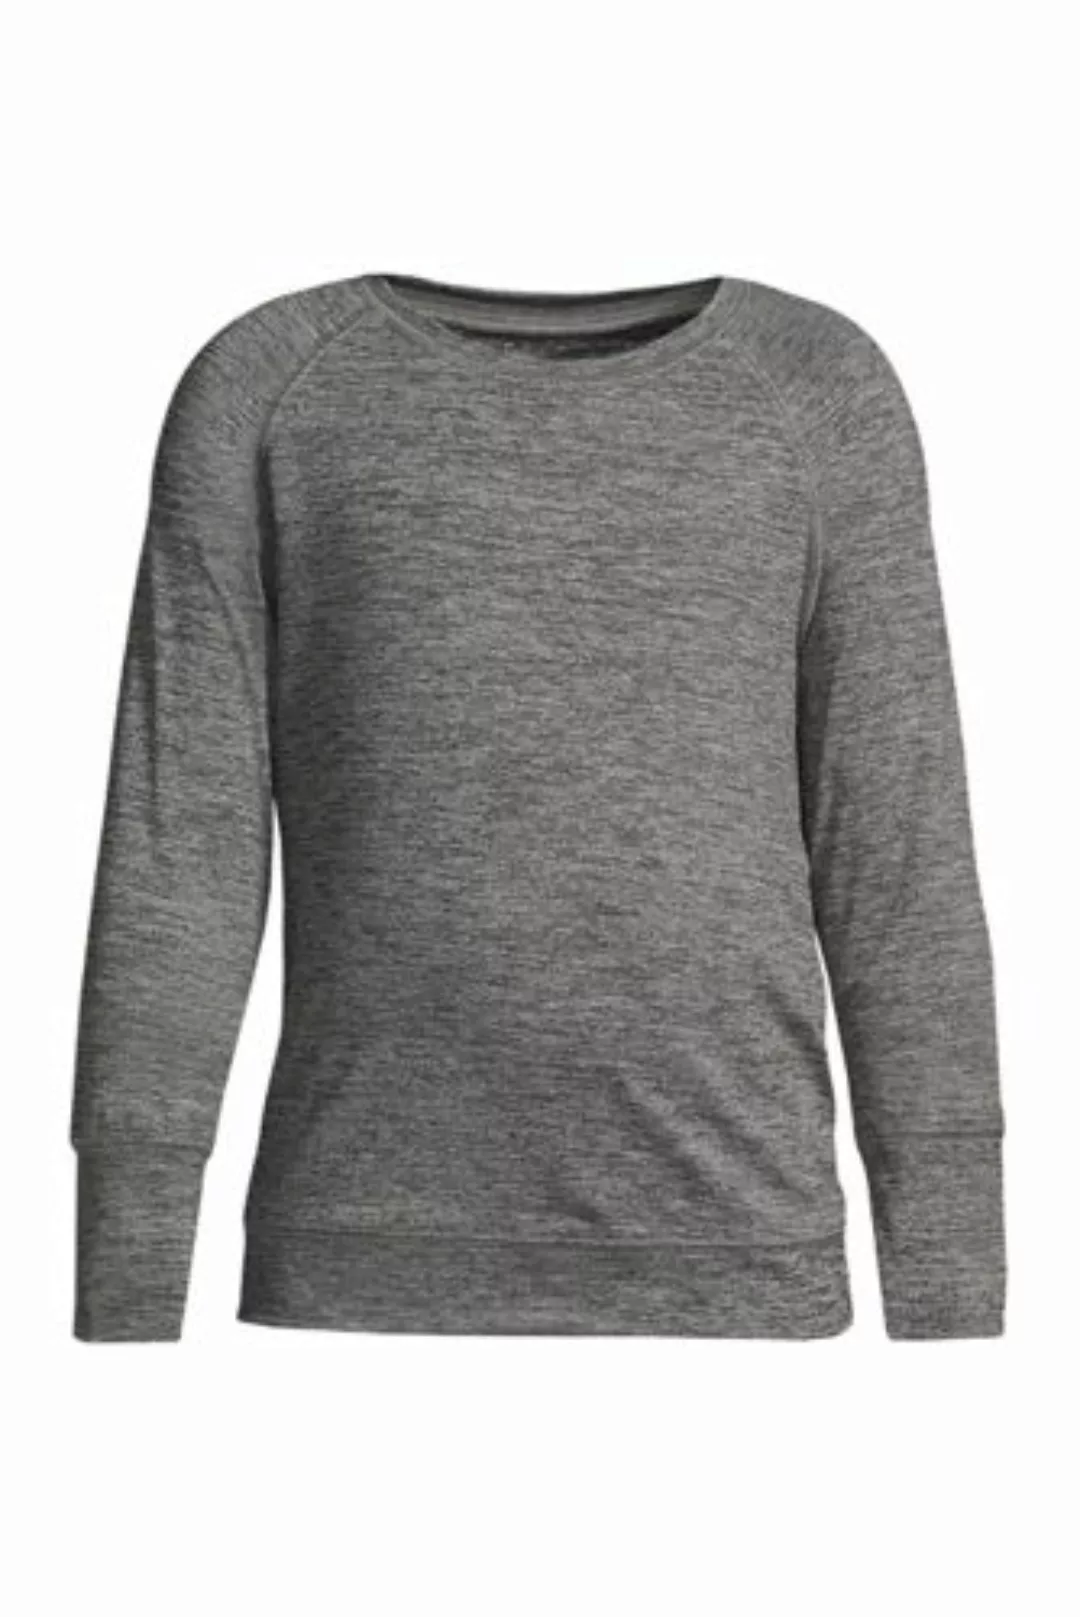 Active-Langarm-Shirt, Größe: 128-134, Schwarz, Elasthan, by Lands' End, Sch günstig online kaufen